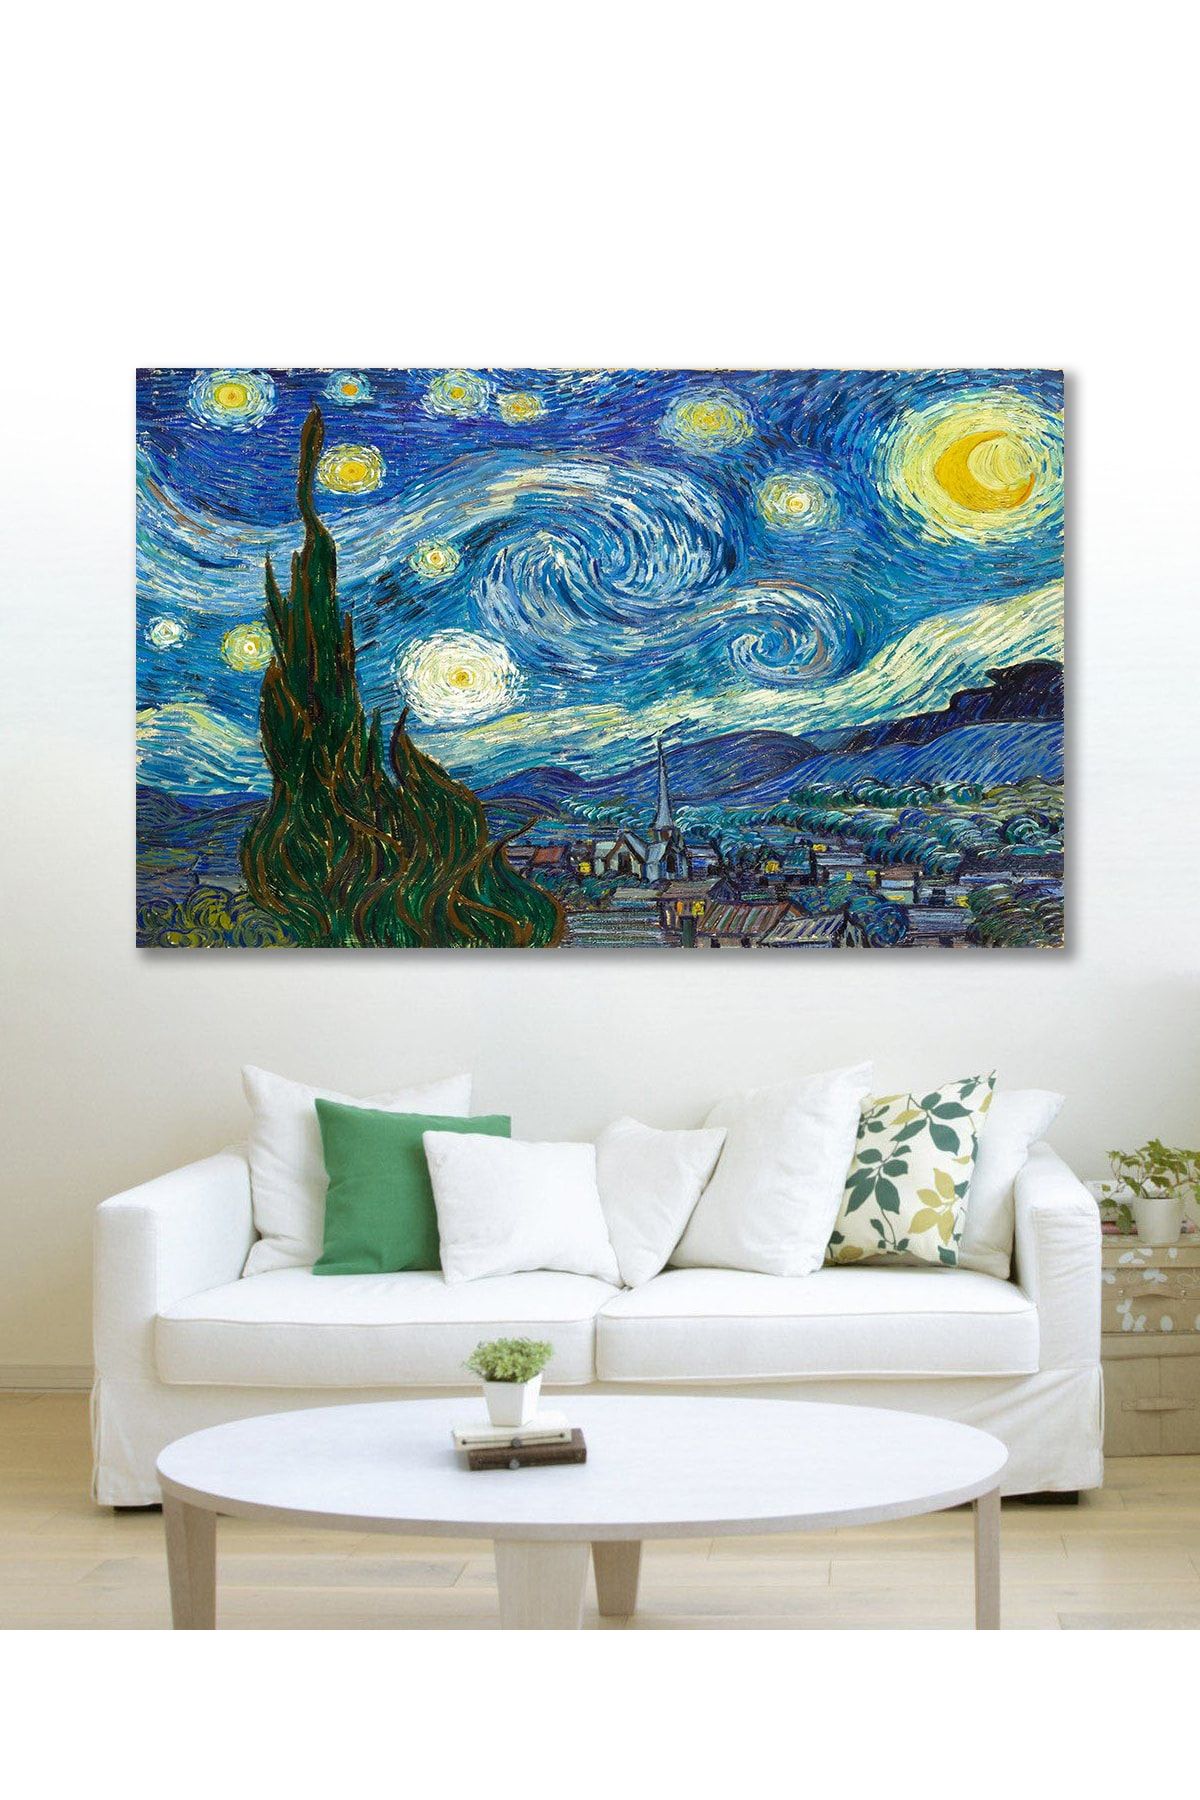 Hediyeler Kapında 90x130 Van Gogh Yıldızlı Gece Duvar Kanvas Tablo